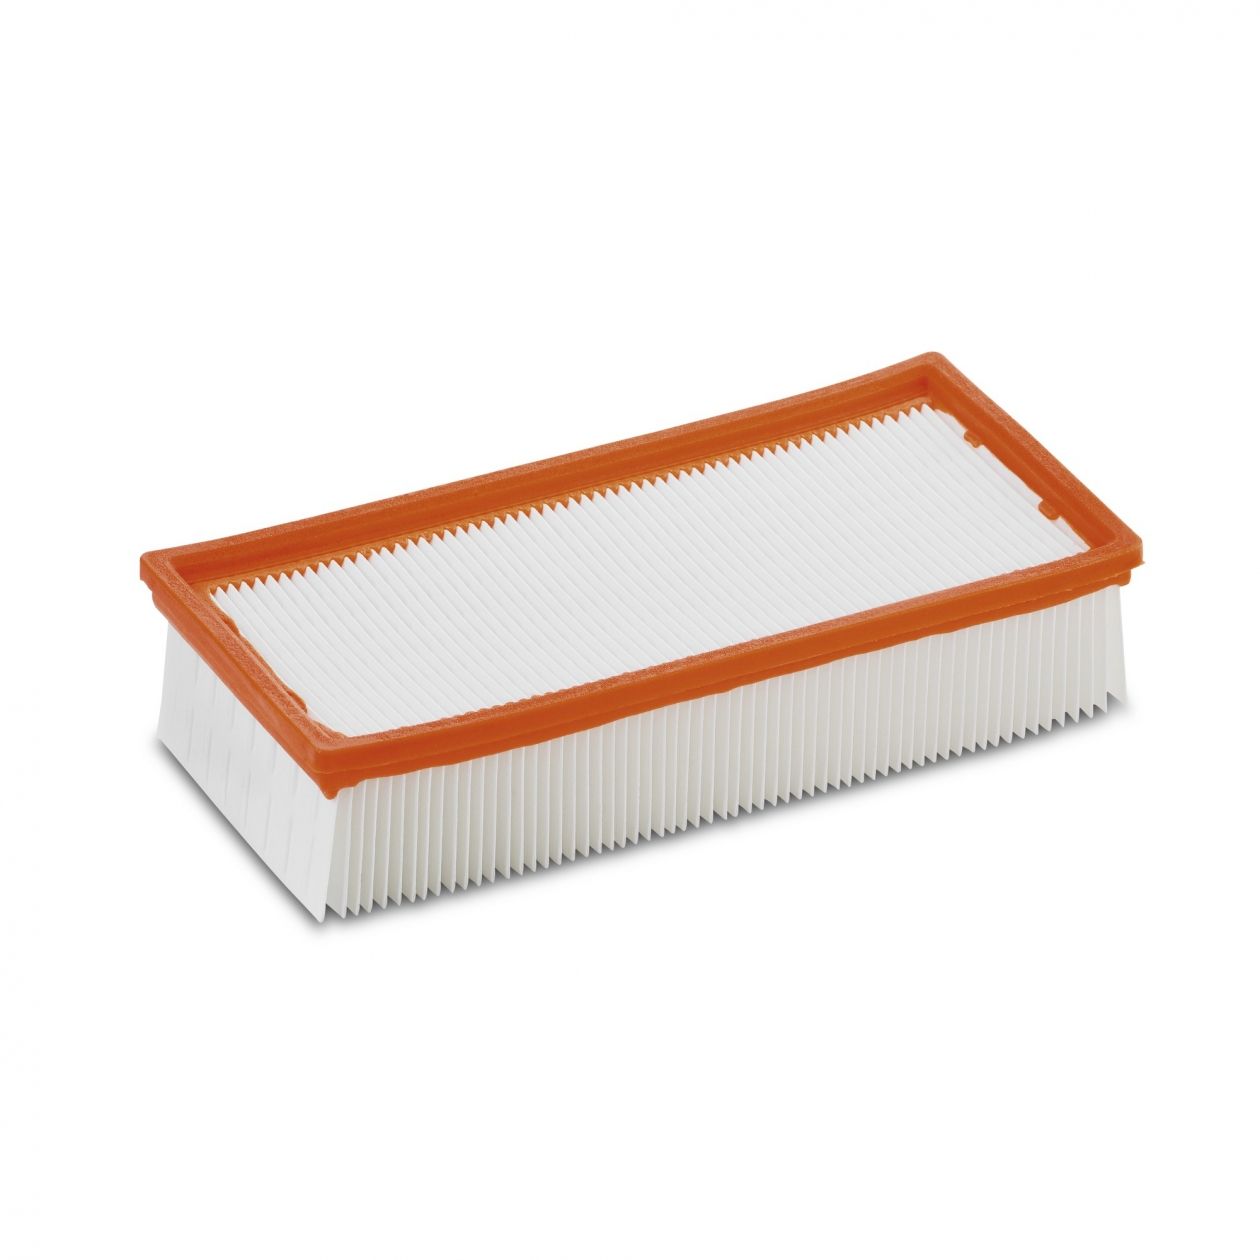 Плоский складчатый бумажный фильтр Karcher для пылесосов NT 351, NT 14/1 Eco и NT 22/1 Ap Bp L